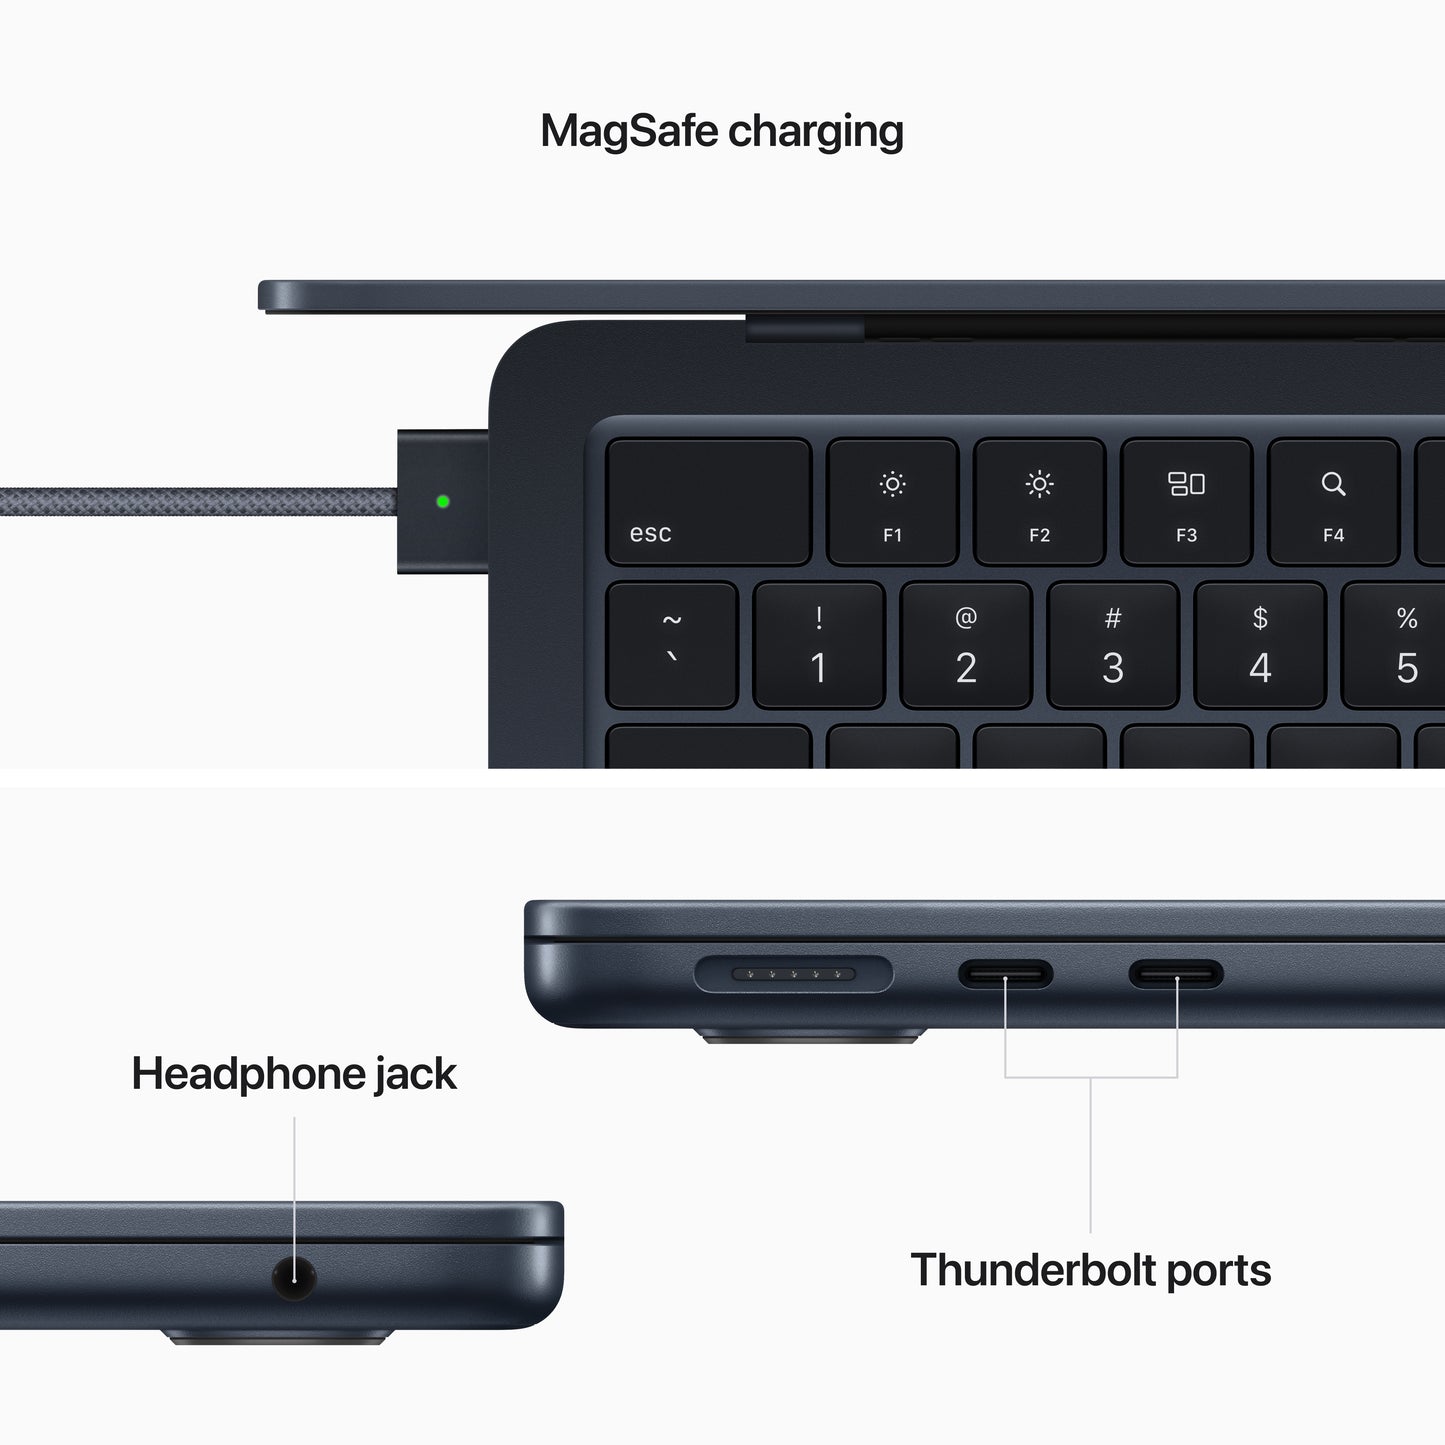 13-inch MacBook Air - M2 - Midnight